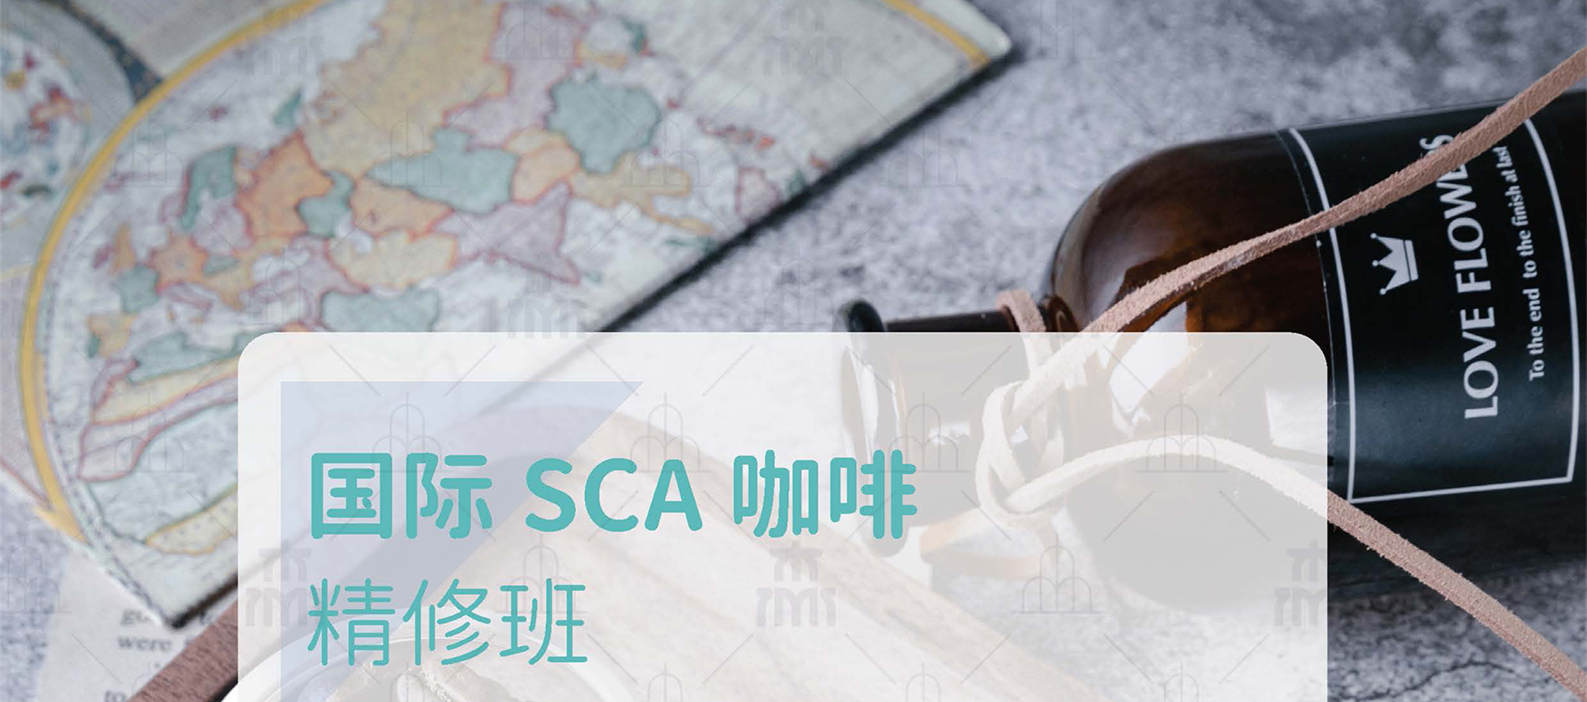 國際SCA咖啡精修班